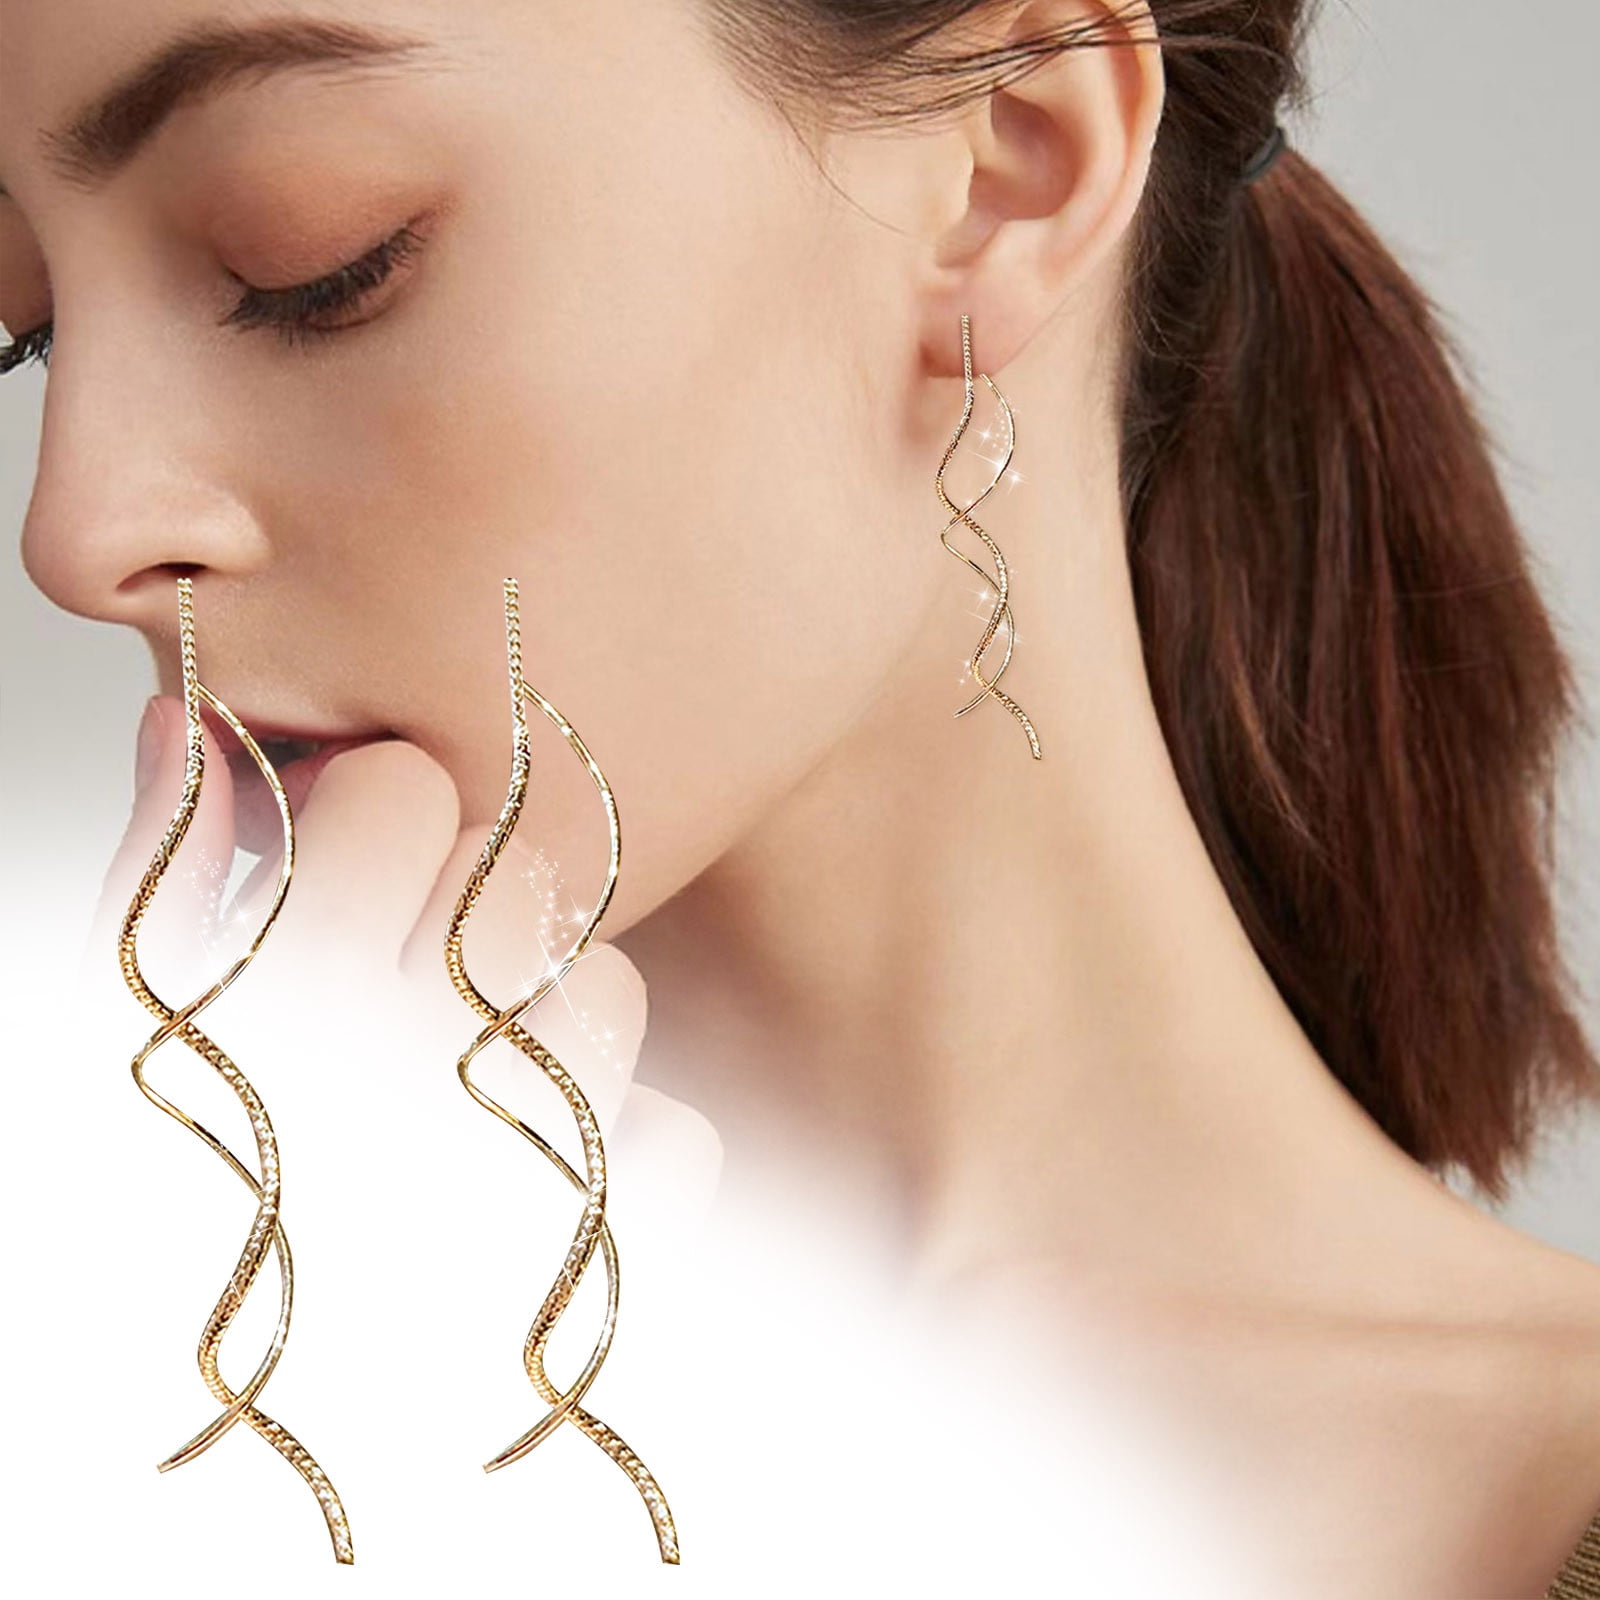 Jewelry Wave Tel Ear Wire For Teen Girls Minimalist Piercing Studs Trendy Earrings 59e307ce d14b 497c adbf 51cf5676bea4.aecf35e04e9d919c0d49e92ebf949544